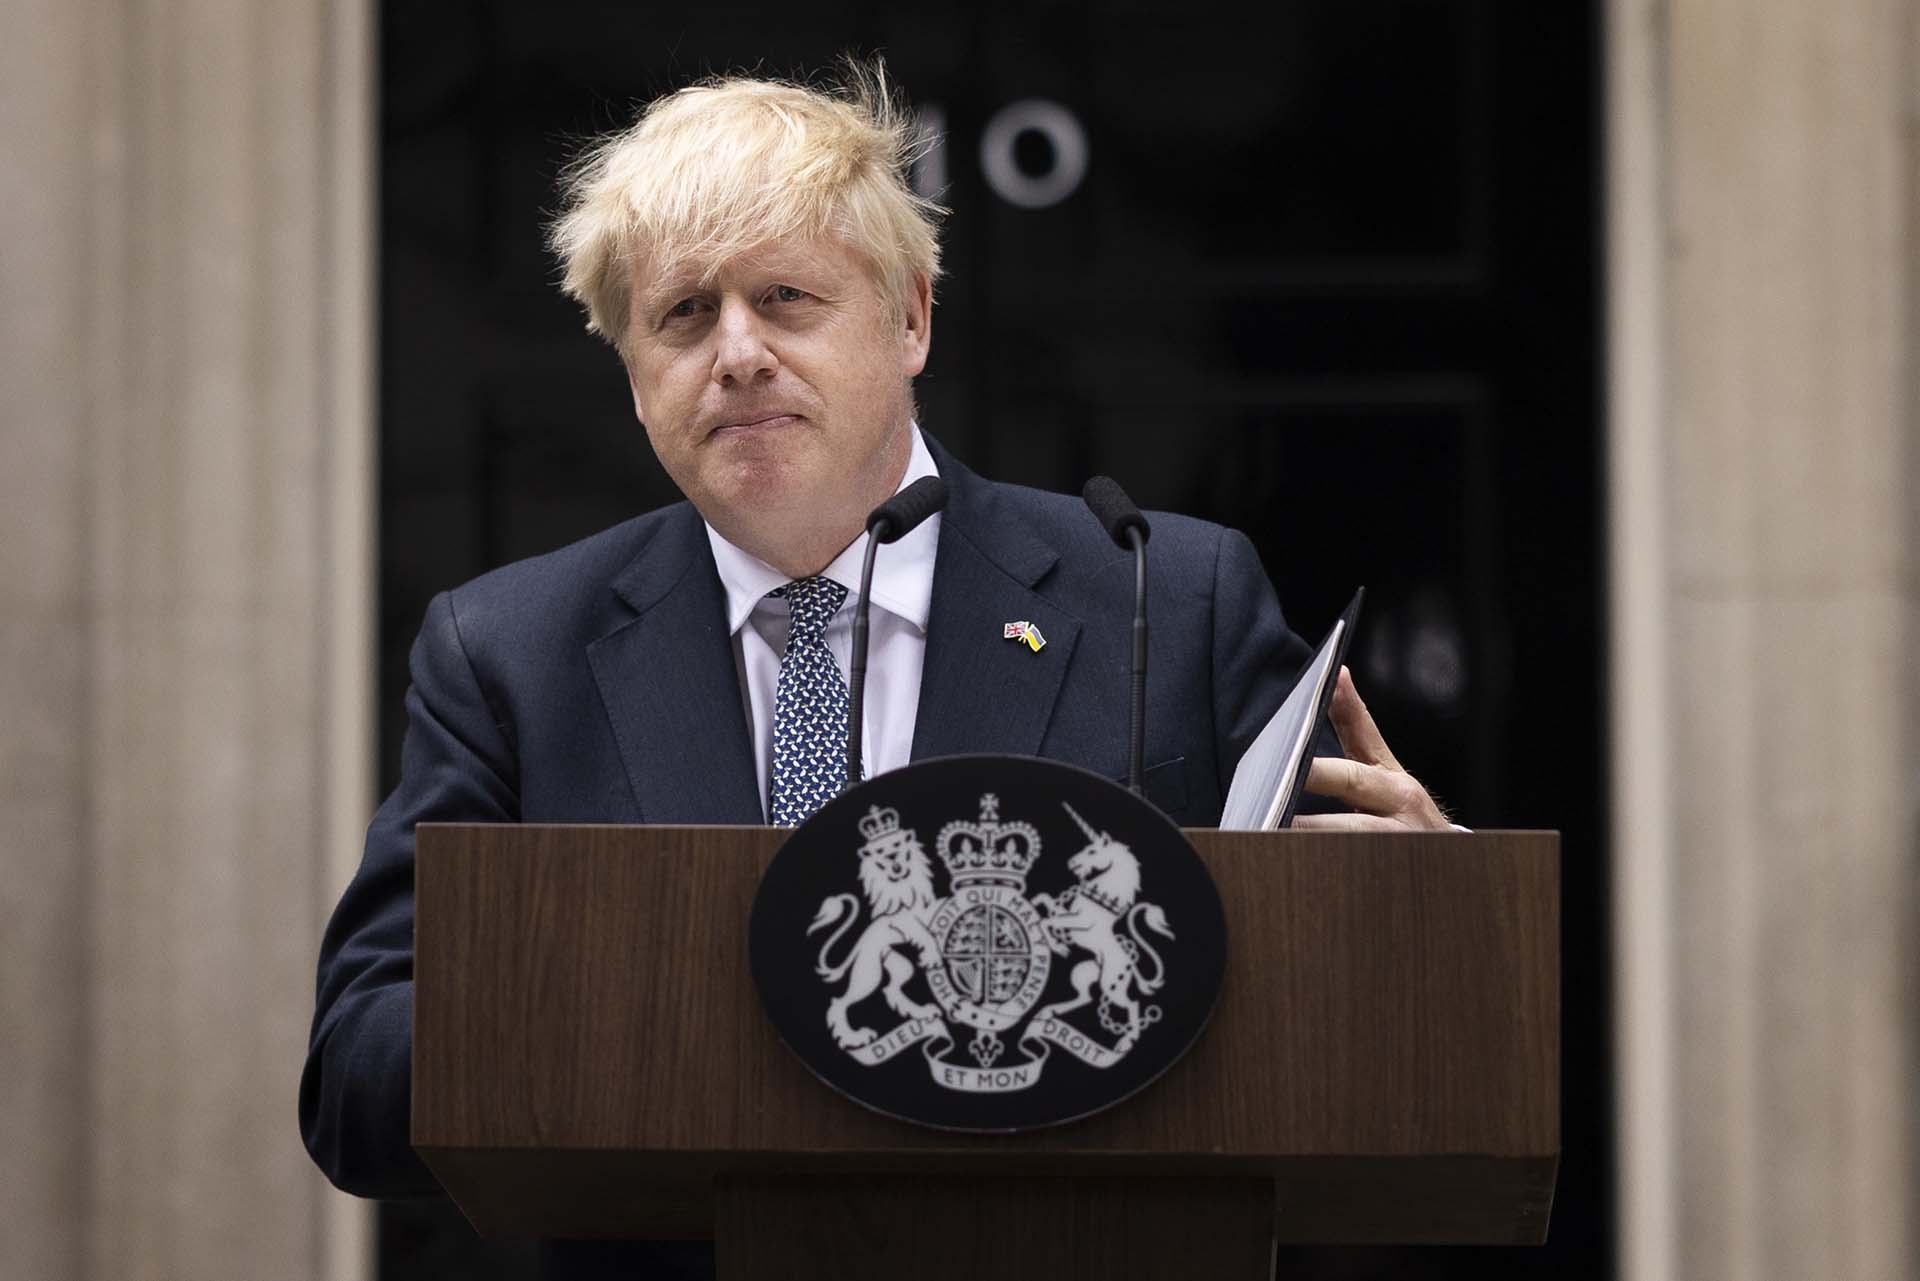 Luego de perder el apoyo del Partido Conservador, Boris Johnson renuncia como Primer Ministro del Reino Unido.